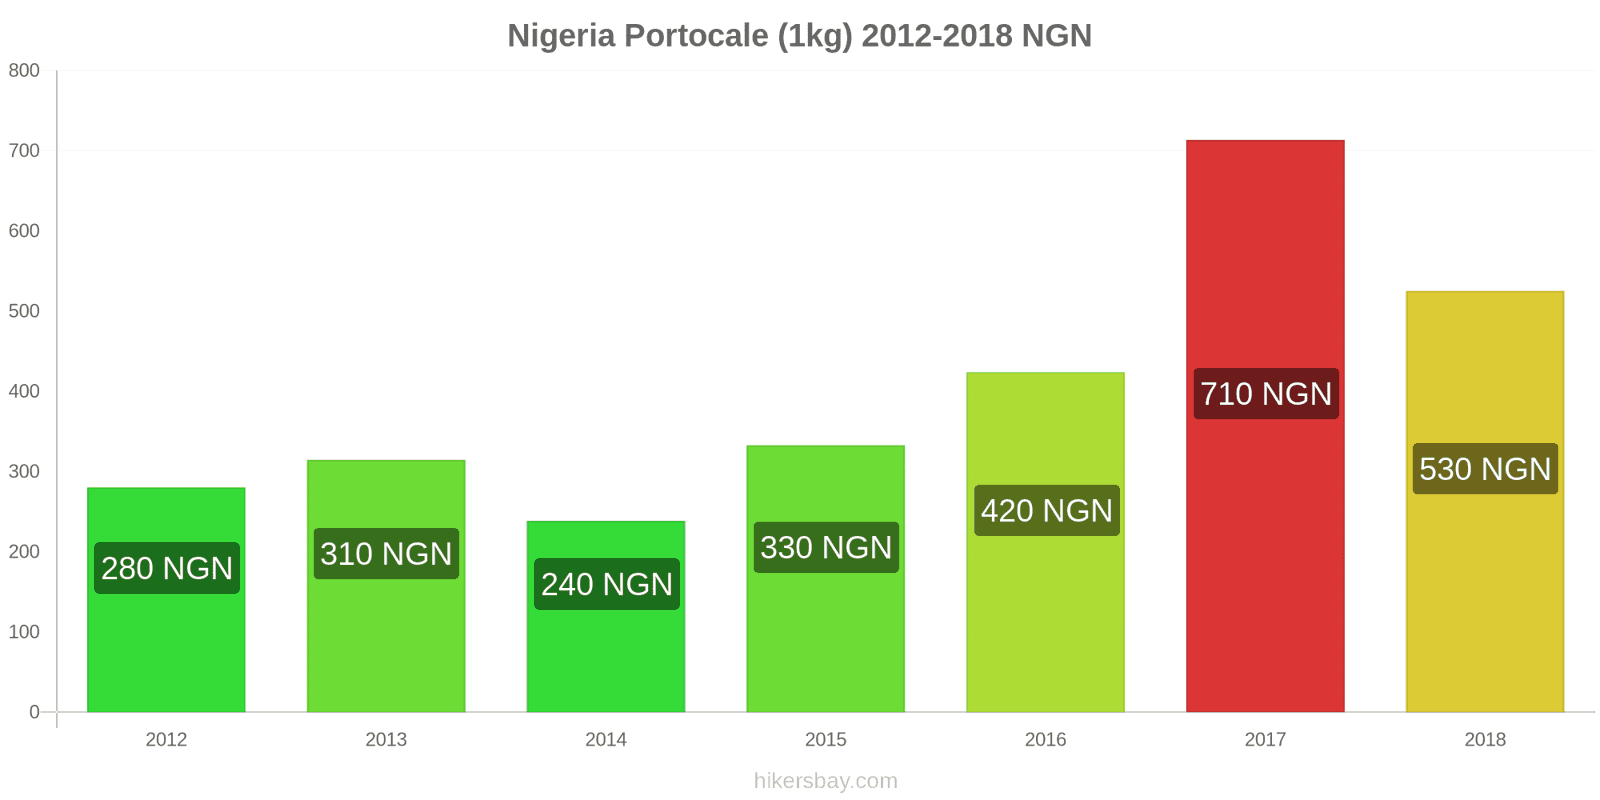 Nigeria schimbări de prețuri Portocale (1kg) hikersbay.com